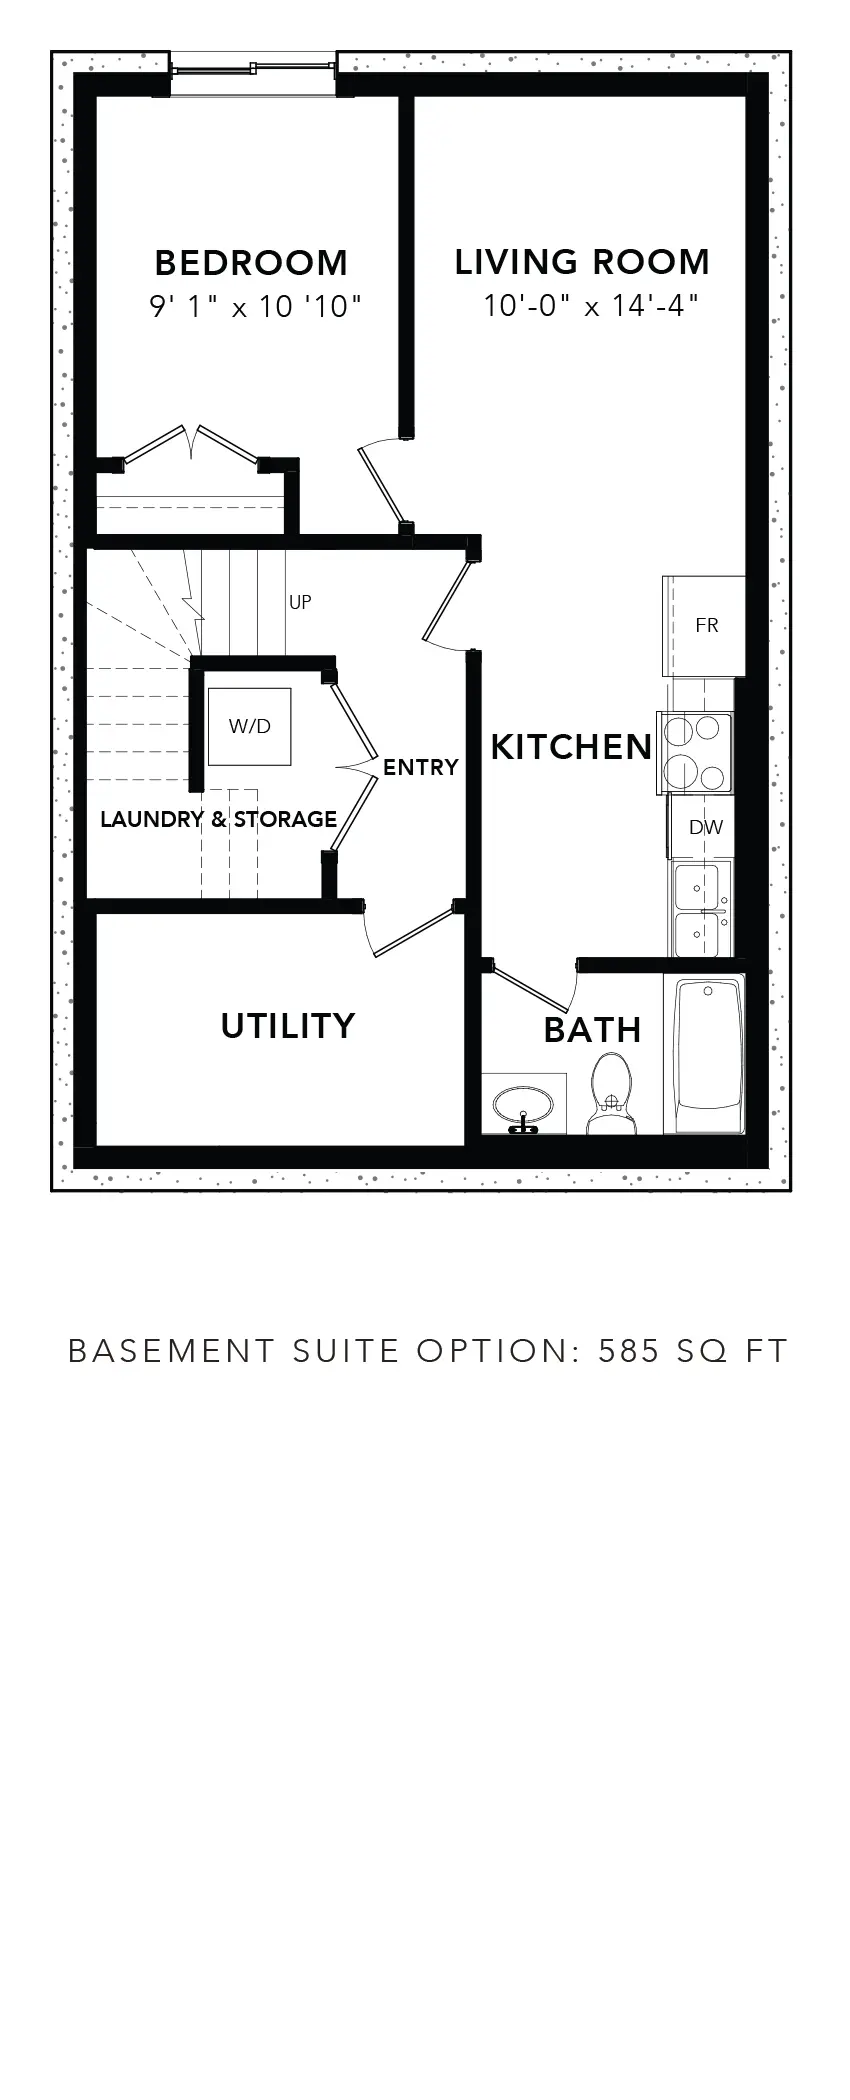 Lodgepole Pine Basement Suite Option